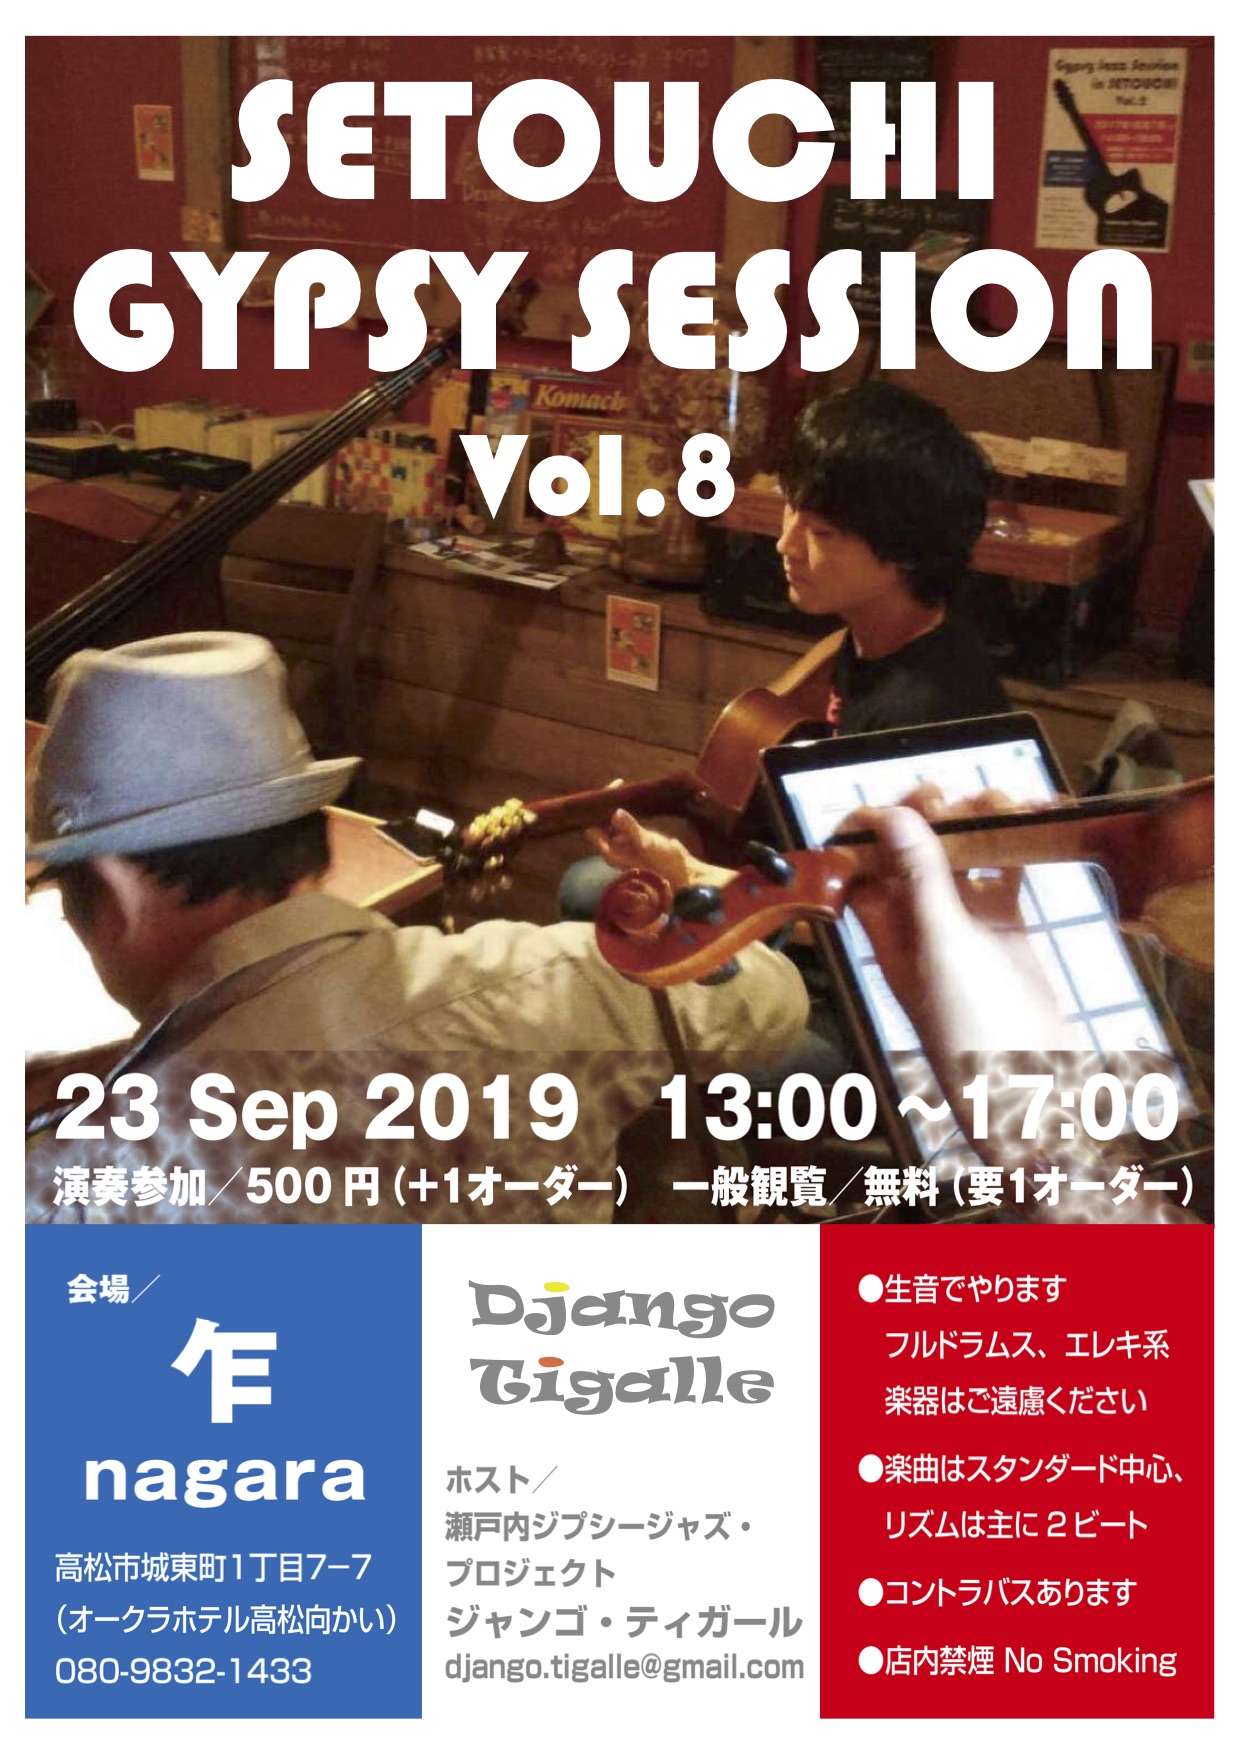 Setouchi Gypsy Session